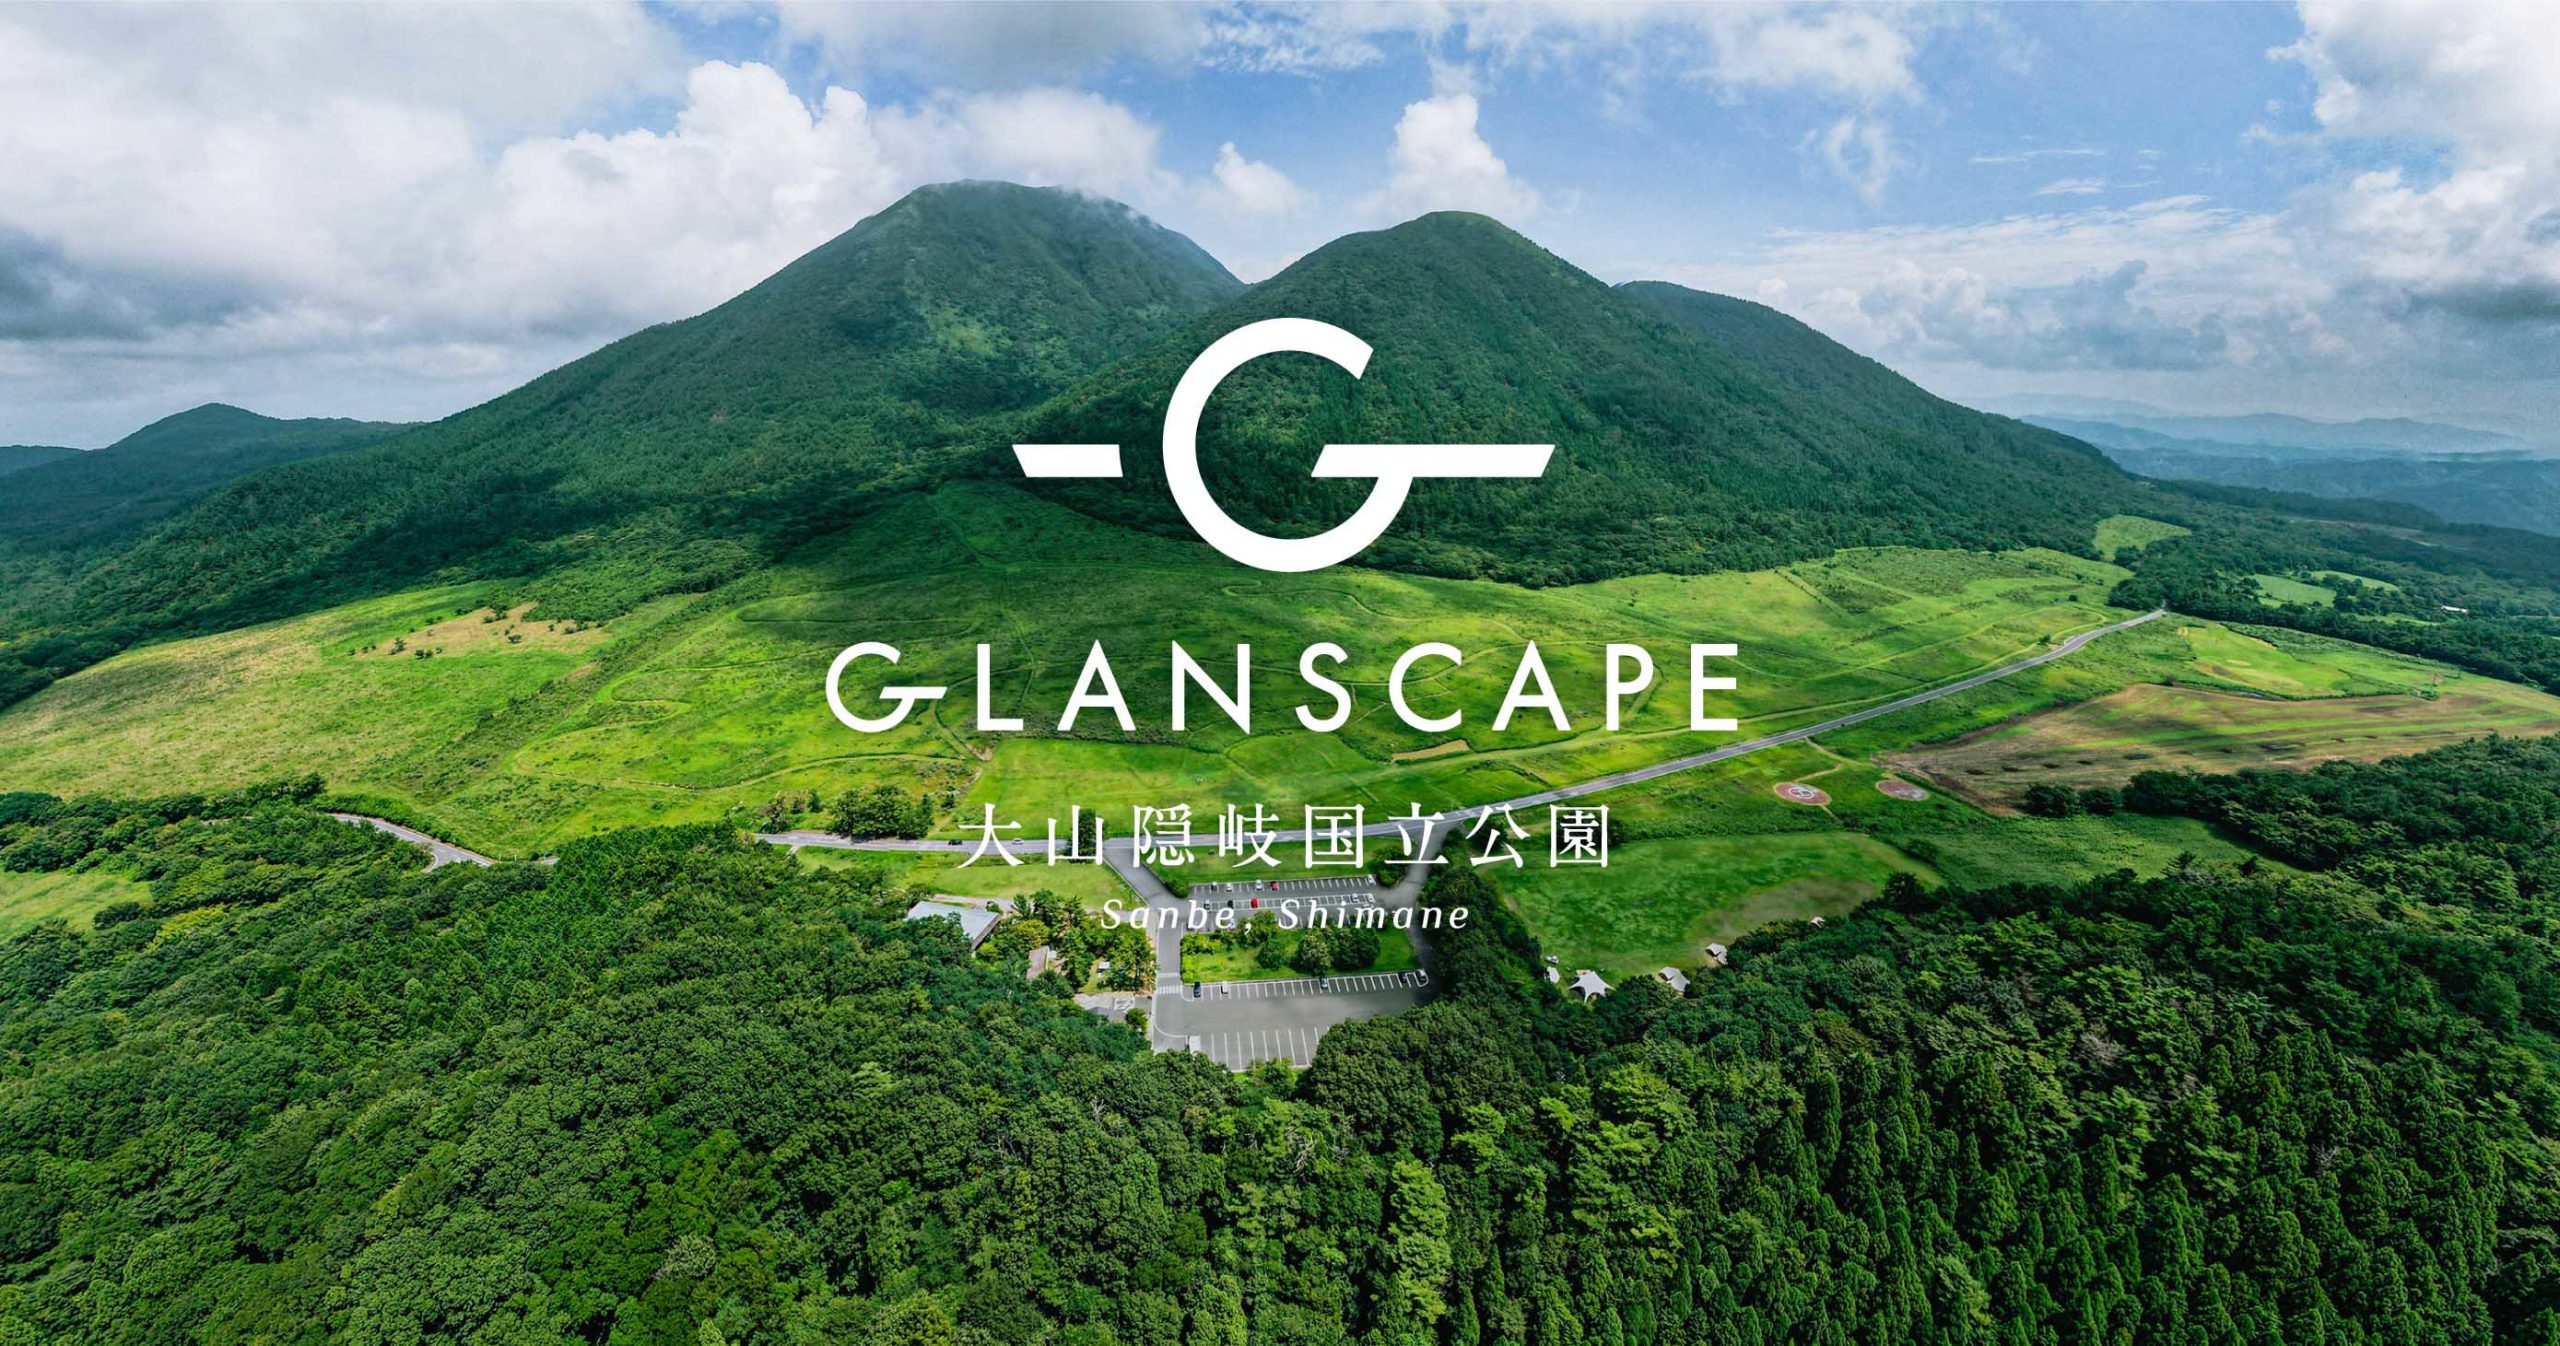 GLANSCAPE 大山隠岐国立公園Sanbe, Shimane｜横尾美杉 アートディレクター 